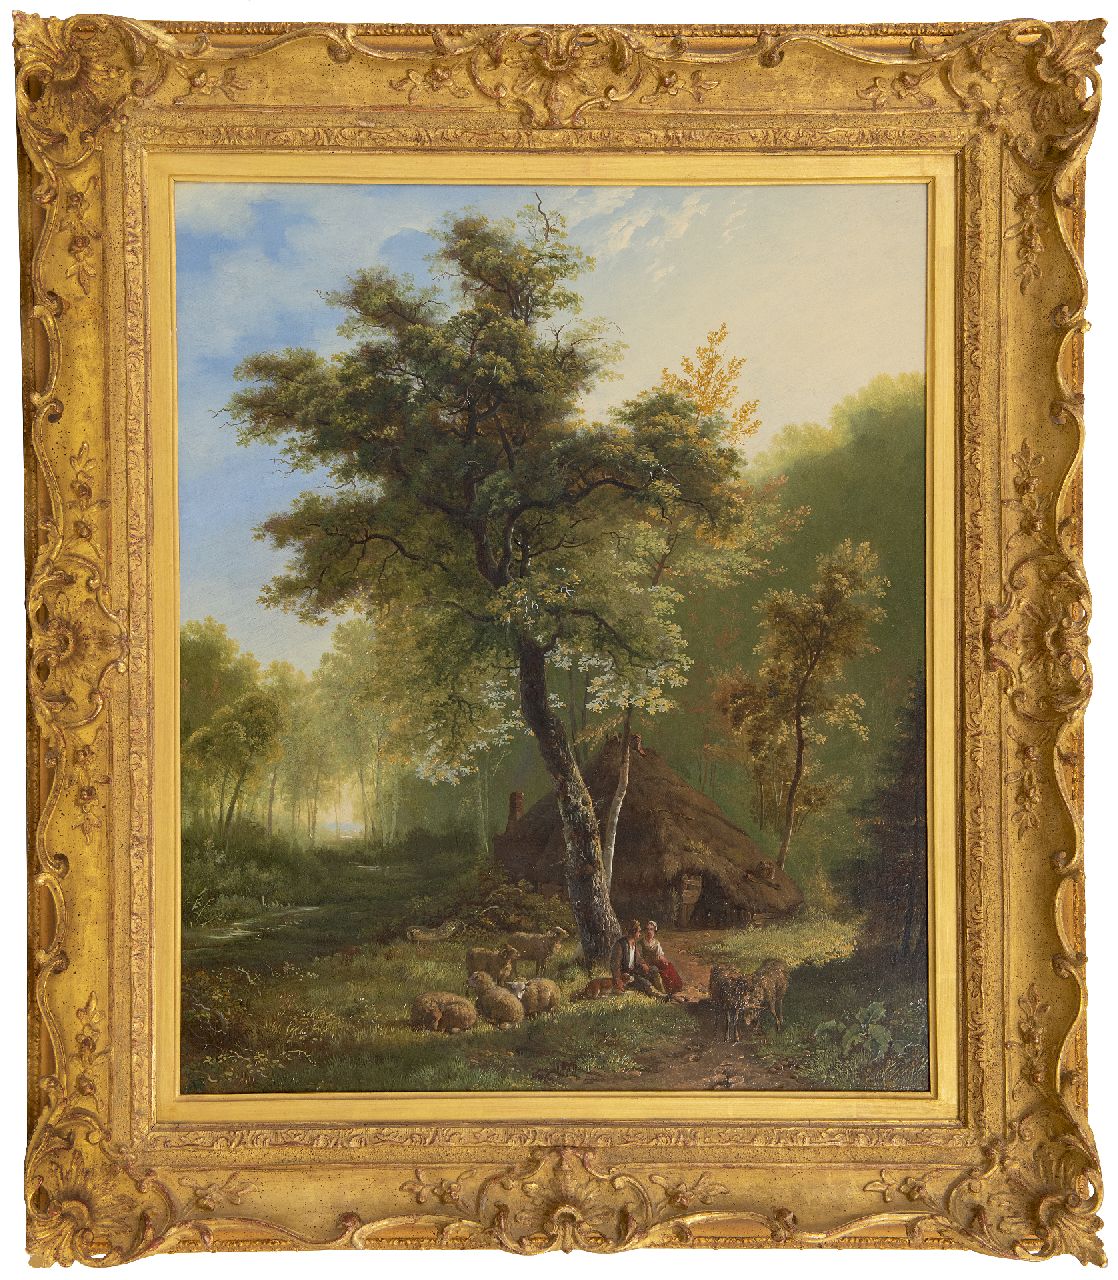 Bodeman W.  | Willem Bodeman | Paintings offered for sale | Hirtenpaar mit Schafen an einer Hütte, oil on panel 58.6 x 49.0 cm, signed l.c. and dated 1856